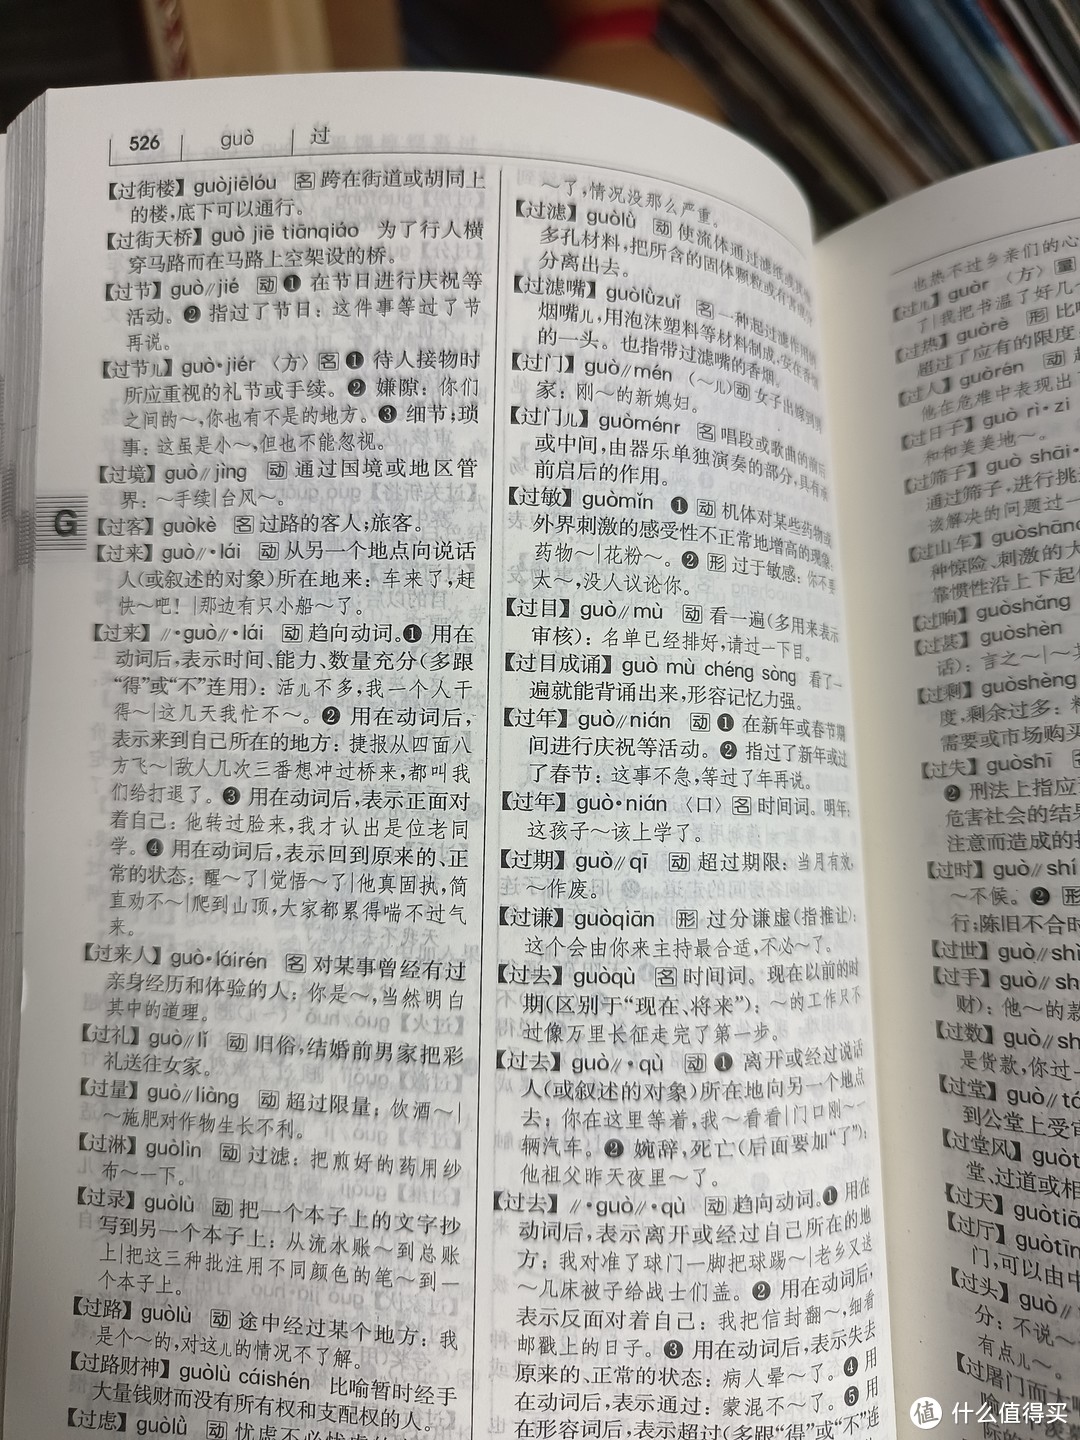 分享一本《现代汉语词典》